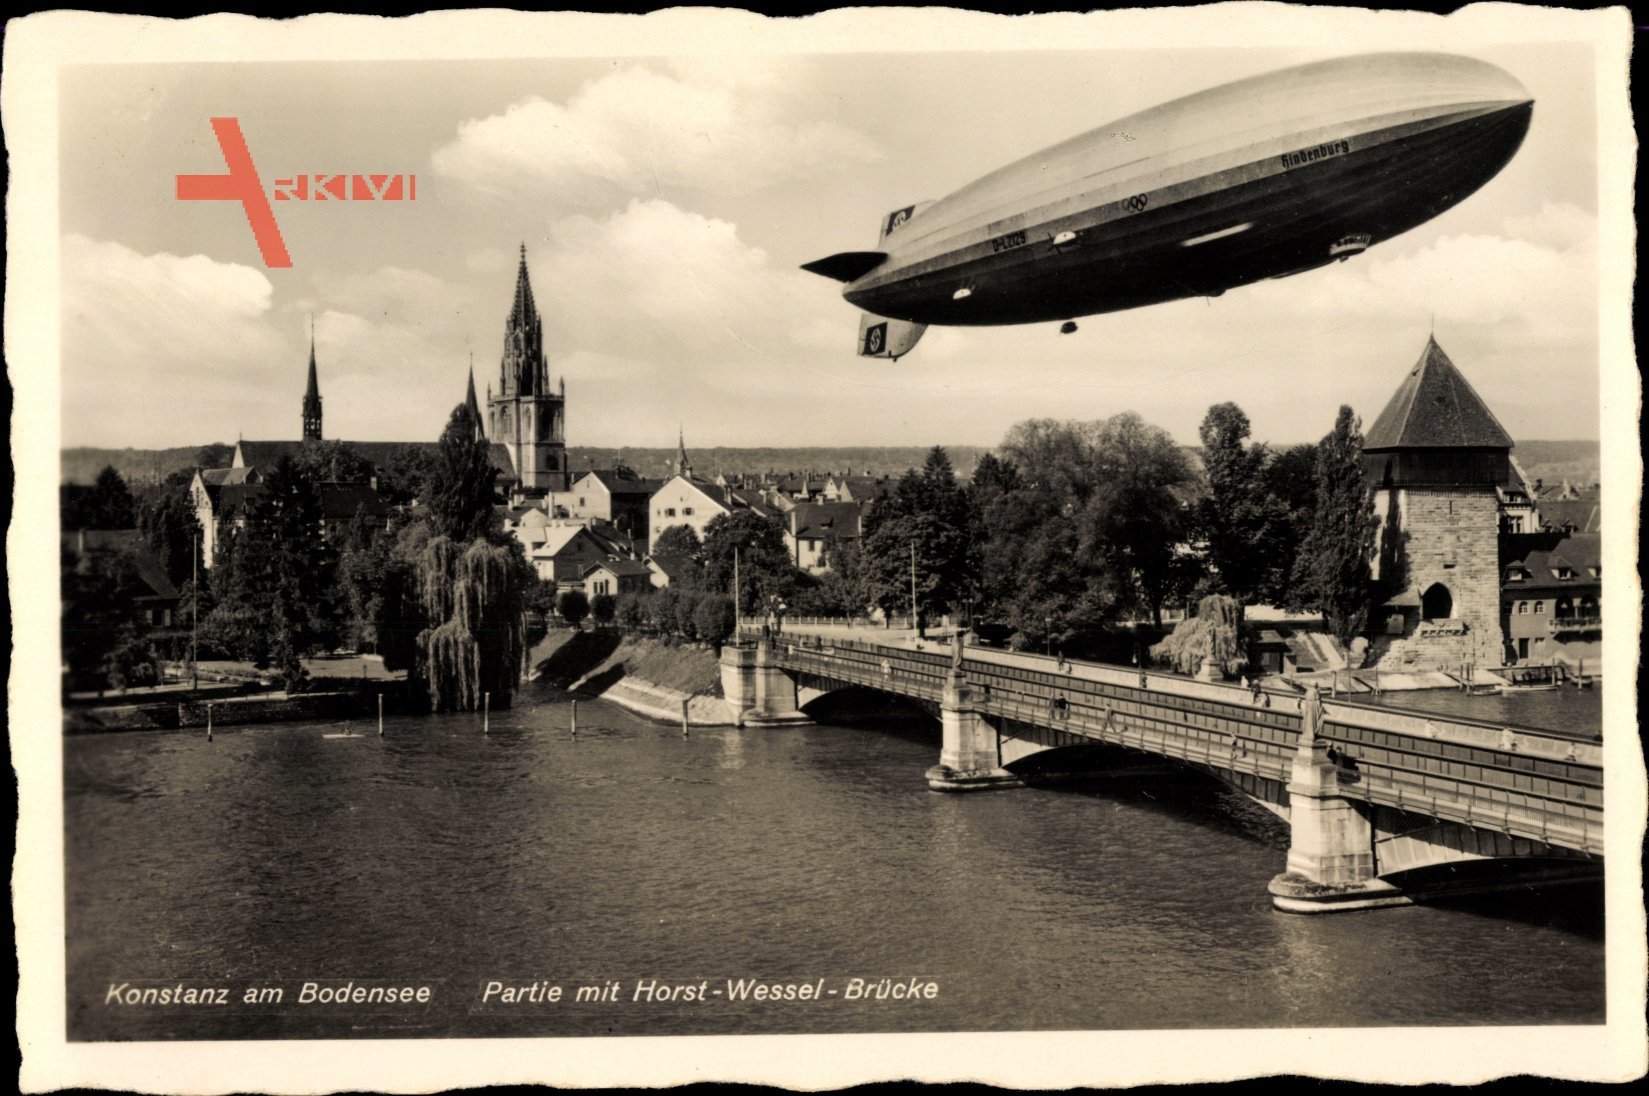 Konstanz am Bodensee, Blick auf die Horst Wessel Brücke, Zeppelin über dem Bodensee